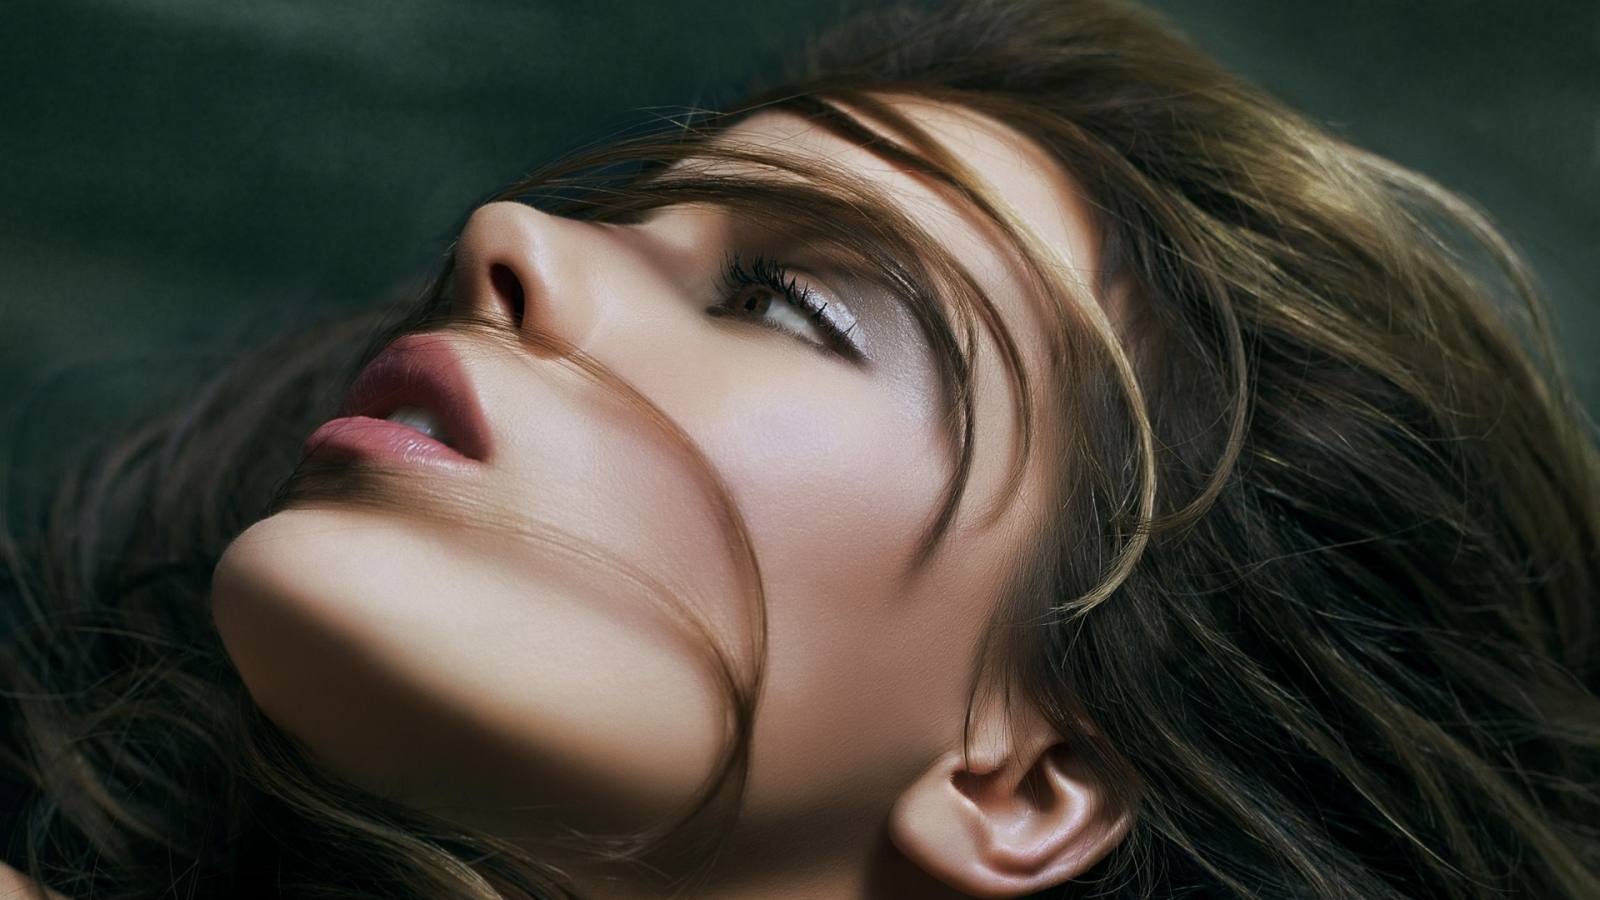 Kate Beckinsale Glamorous for 1600 x 900 HDTV resolution